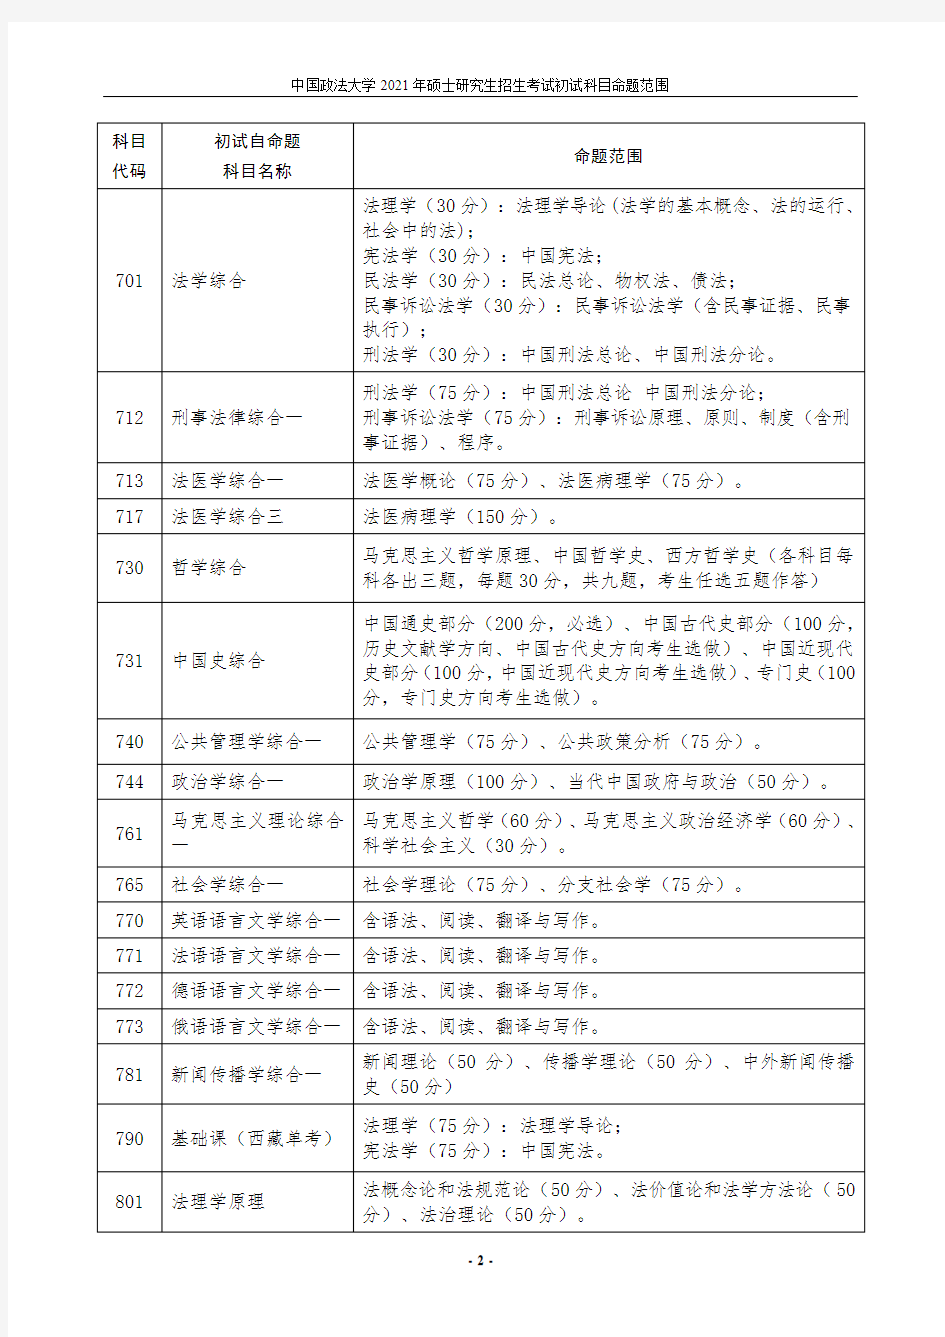 中国政法大学2021年硕士研究生招生考试初试科目命题范围